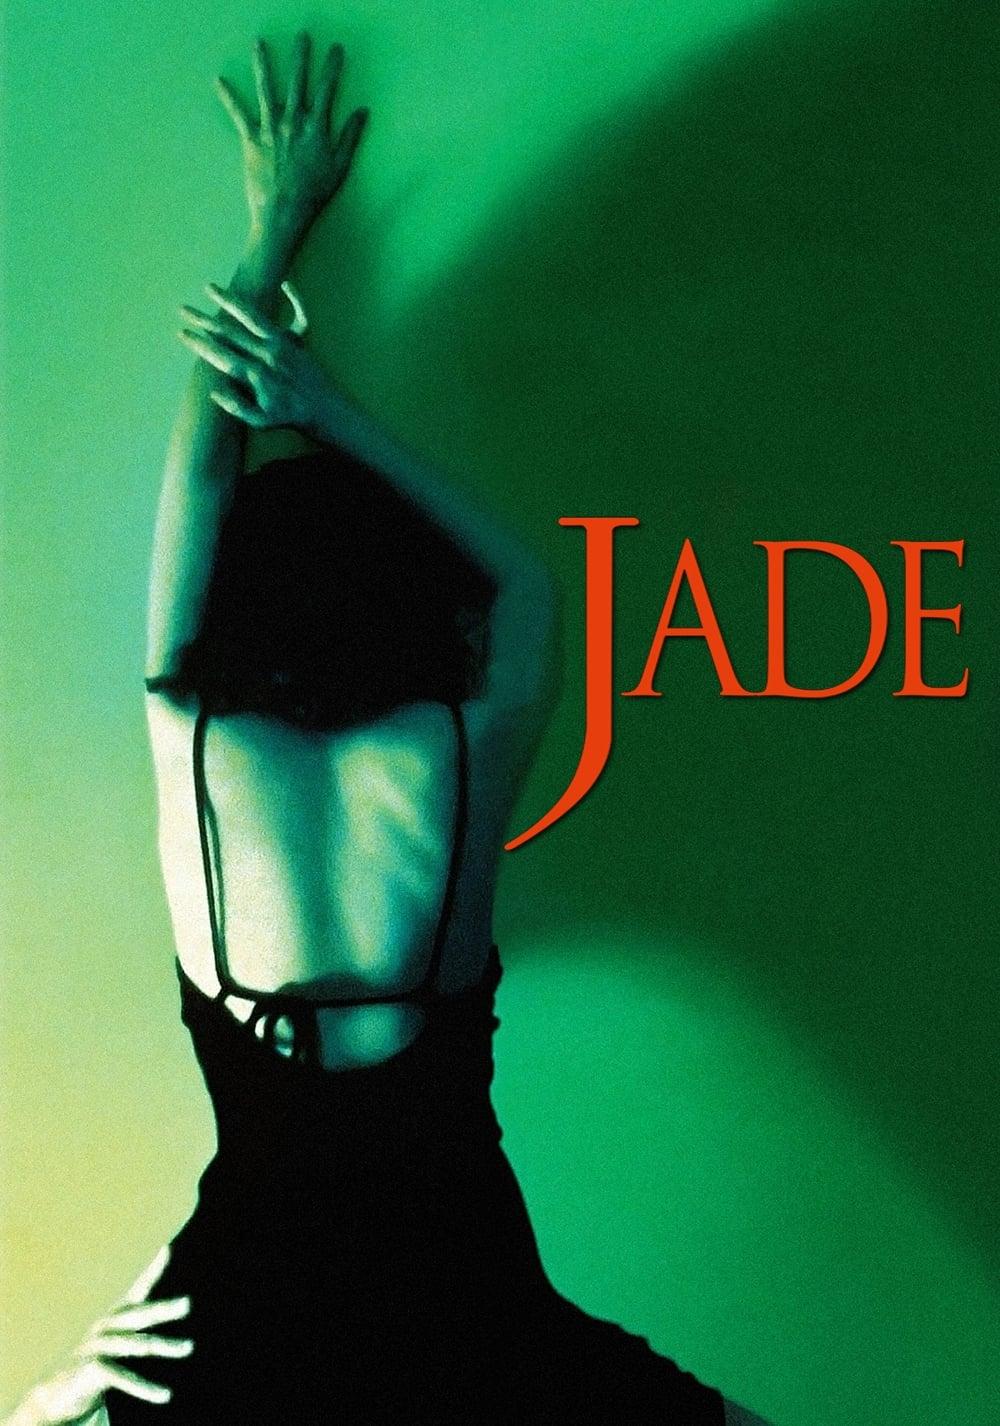 Jade poster